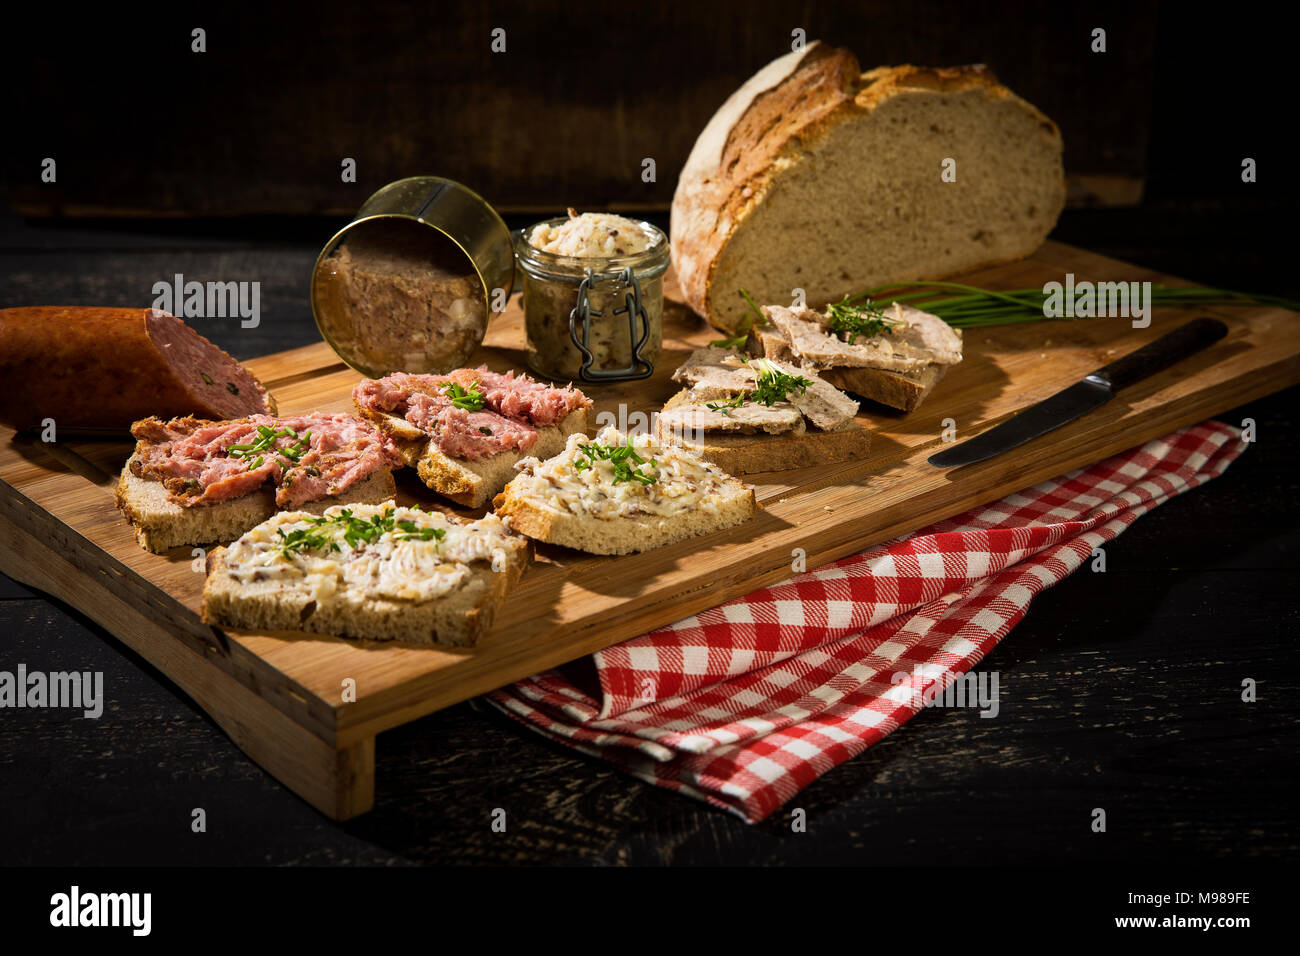 Pan crujiente, chirrido de grasa, salchichas de hígado, carne picada y la salchicha de cerdo Foto de stock